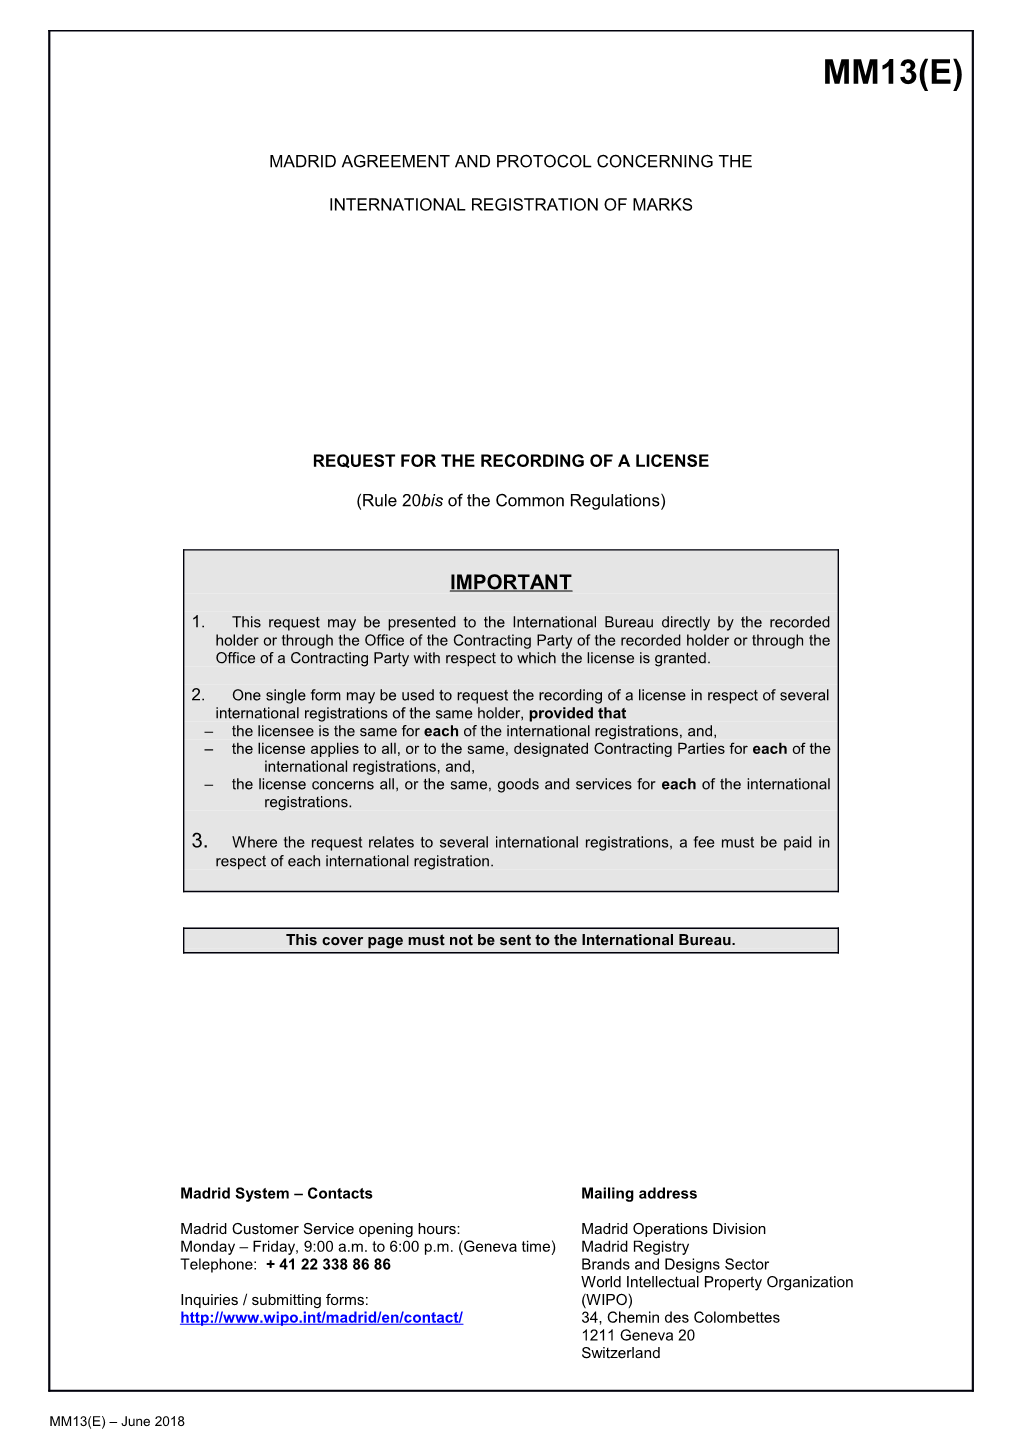 Form MM13 (Madrid Agreement Concerning the International Registration of Marks